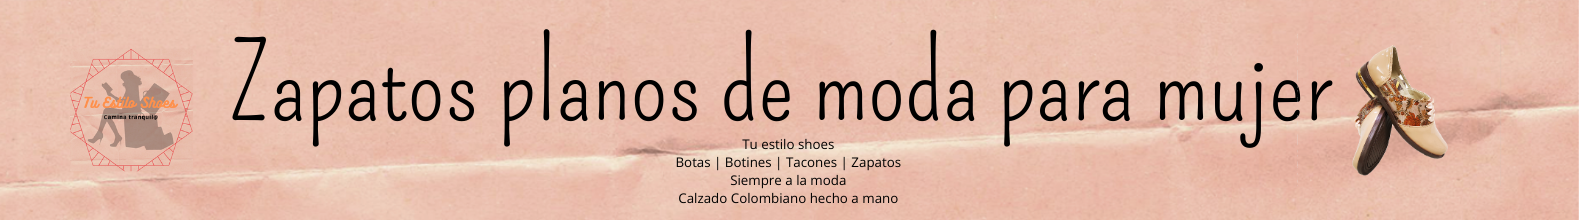 Zapatos para mujer bolicheros en color miel sin IVA